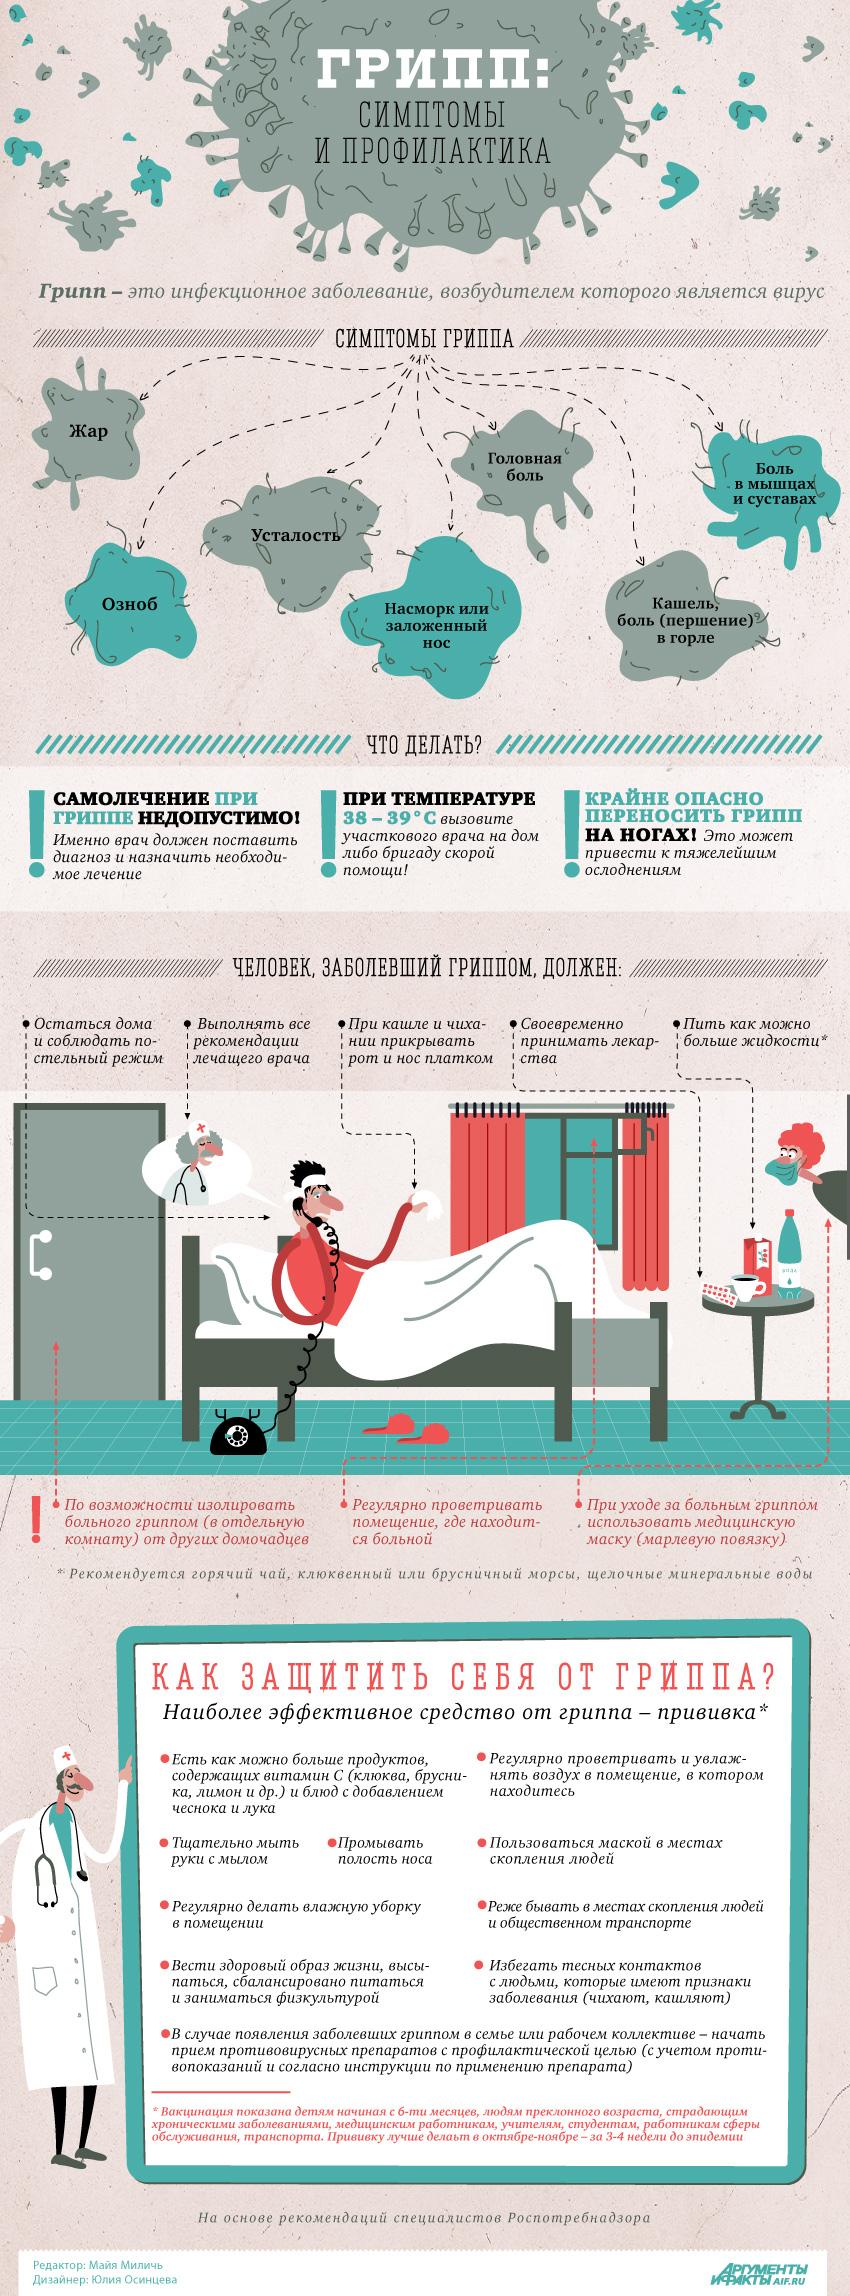 "Грипп - симптомы и профилактика" - инфографика от Роспотребнадзора